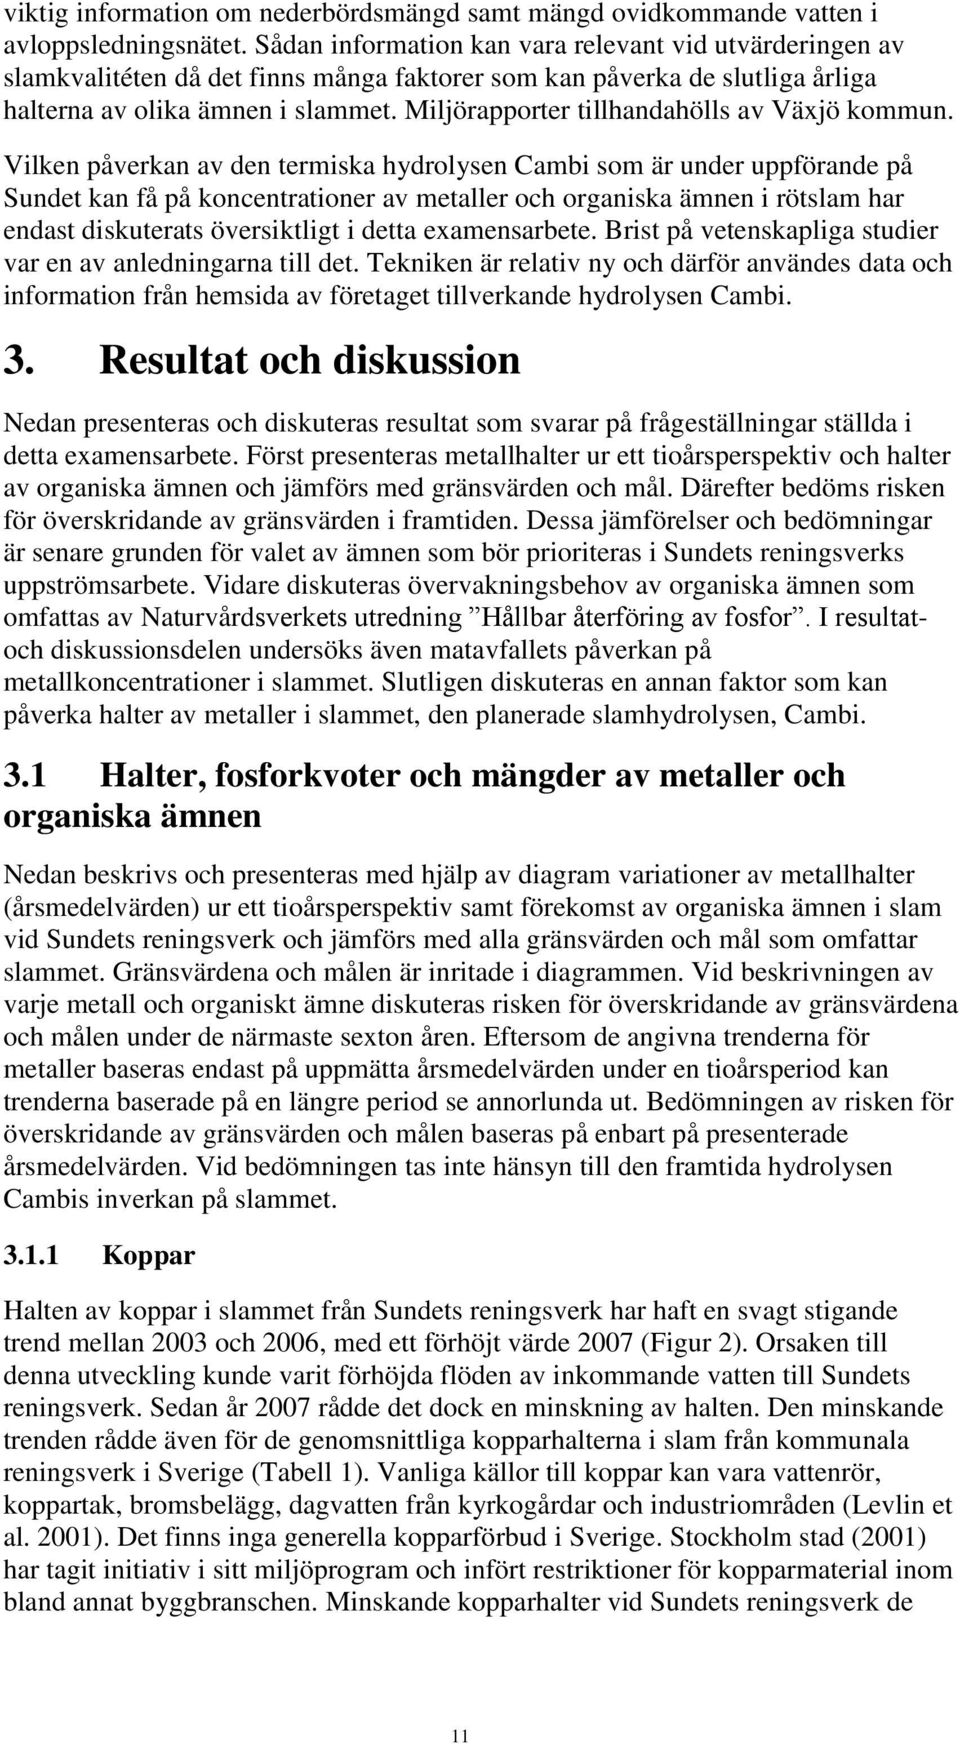 Miljörapporter tillhandahölls av Växjö kommun.